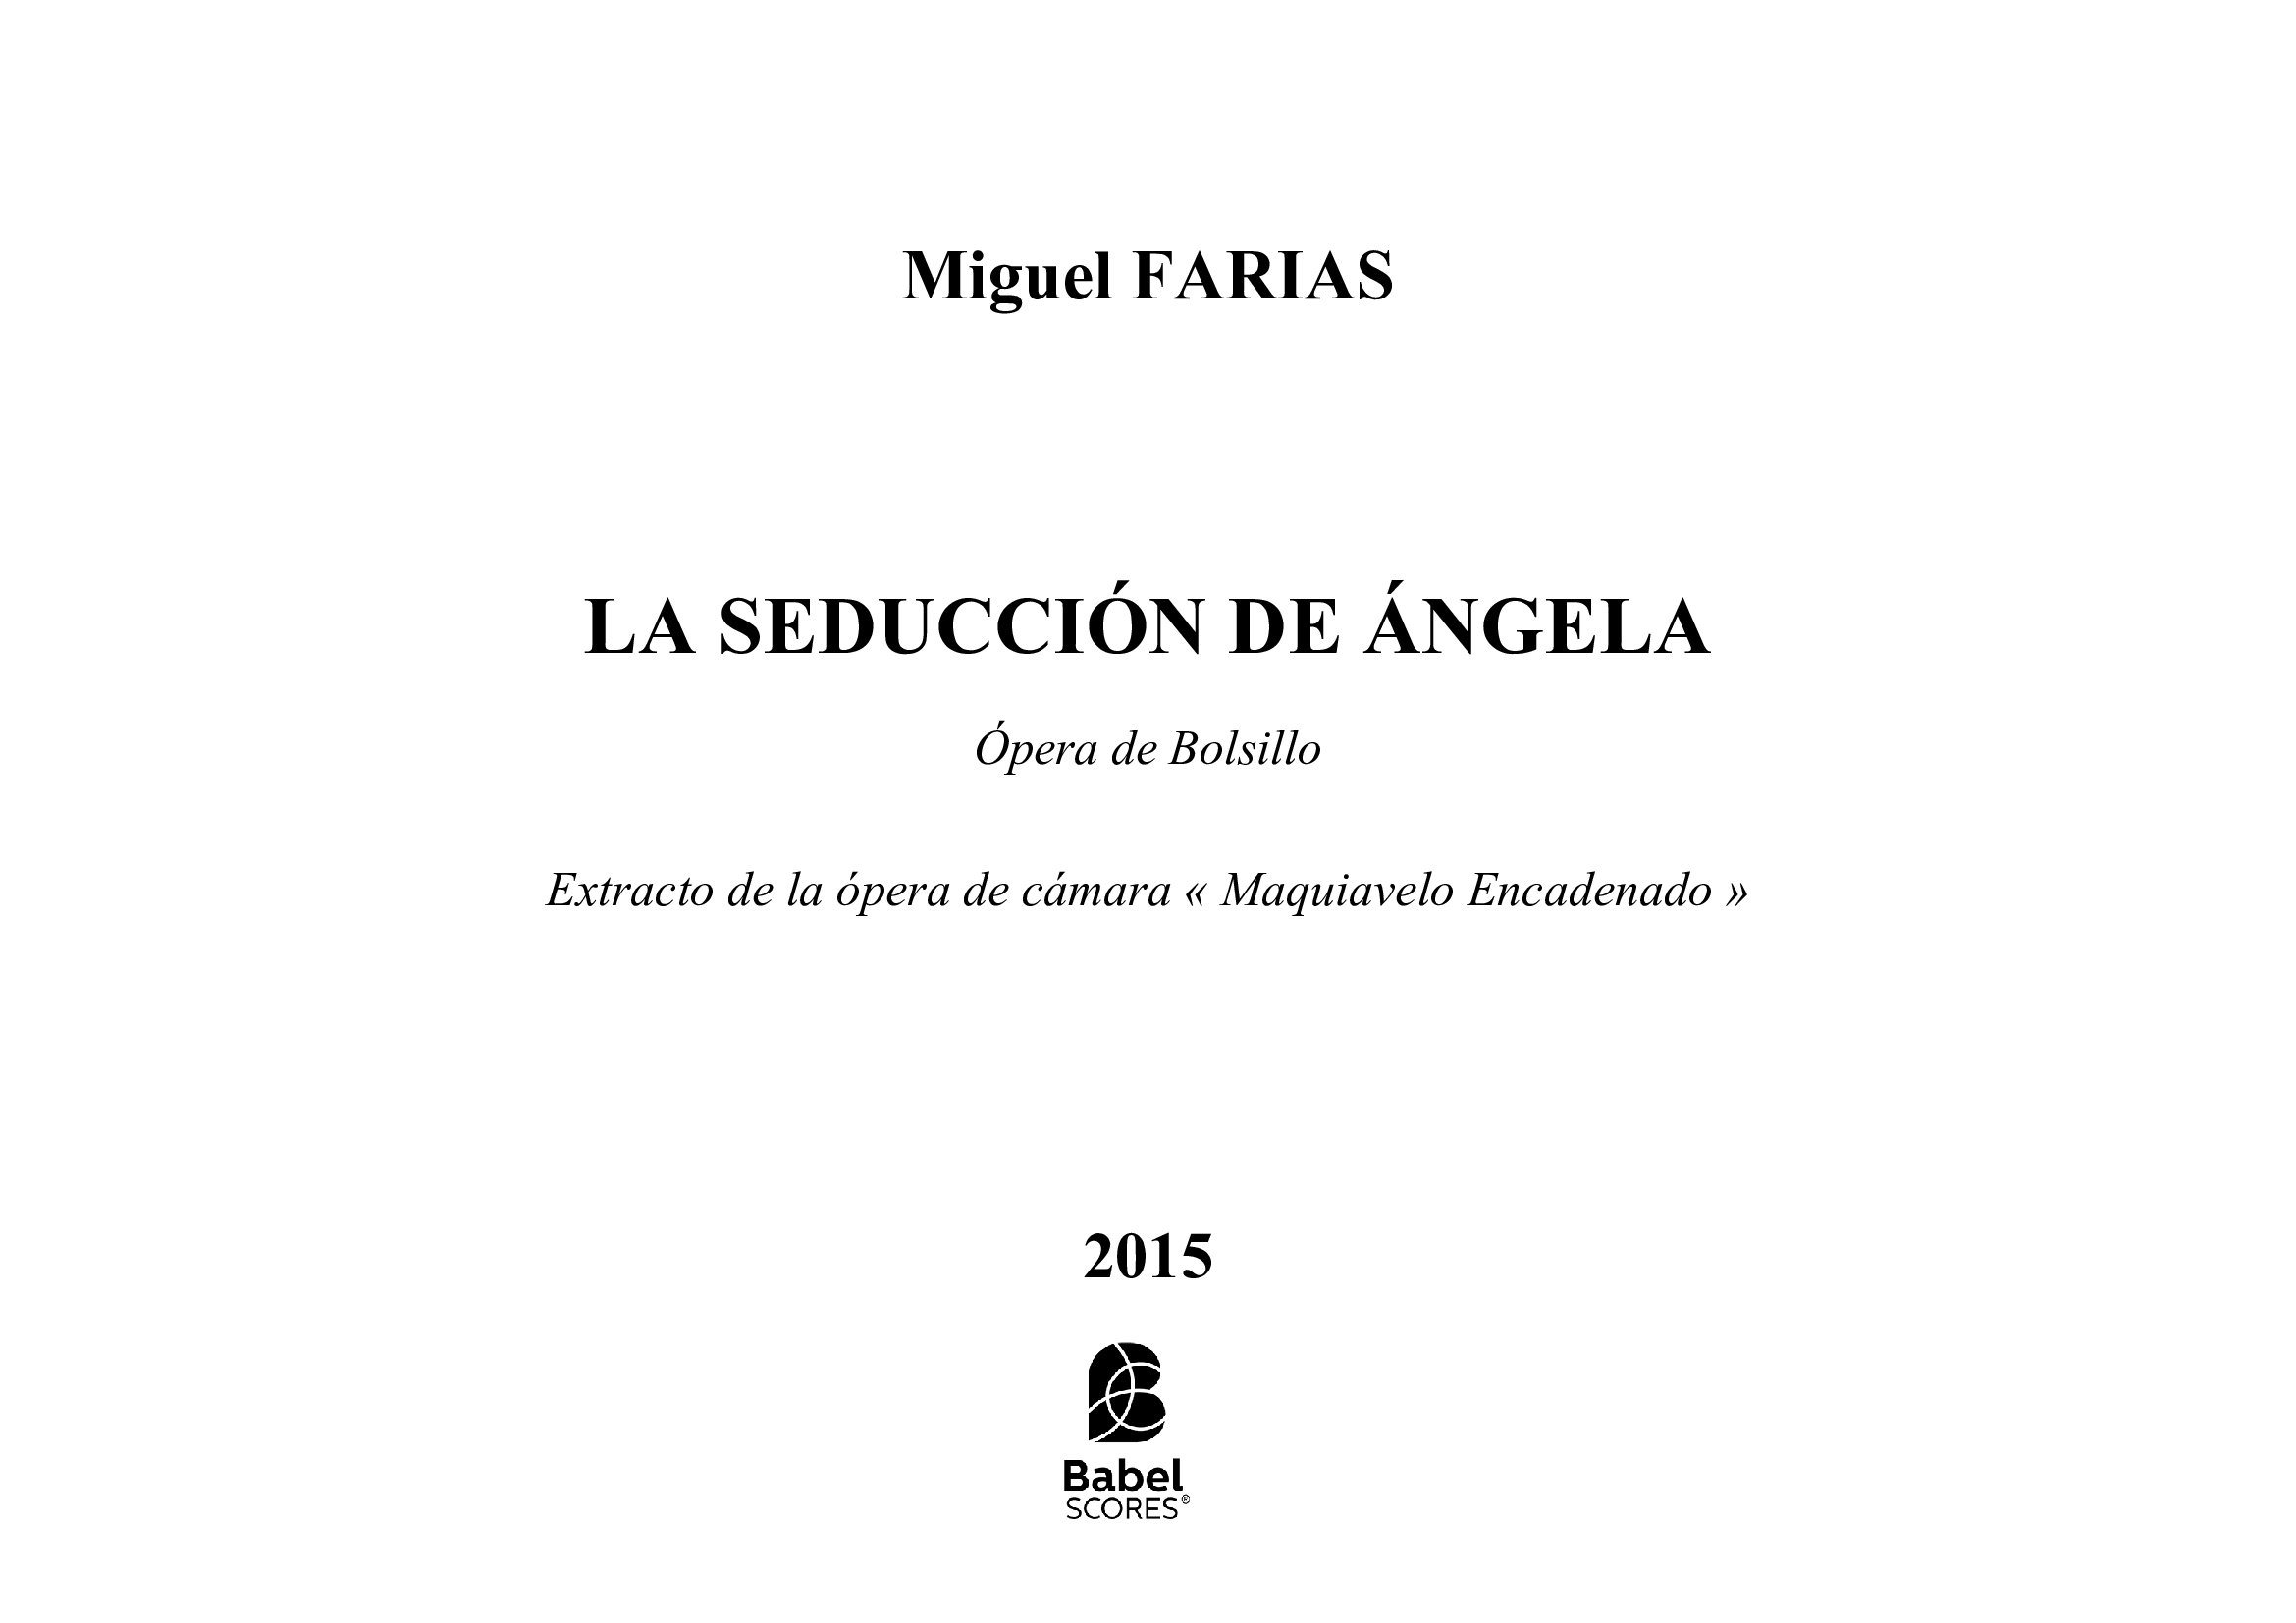 La Seduccion de Angela A4 z 2 120 1 225